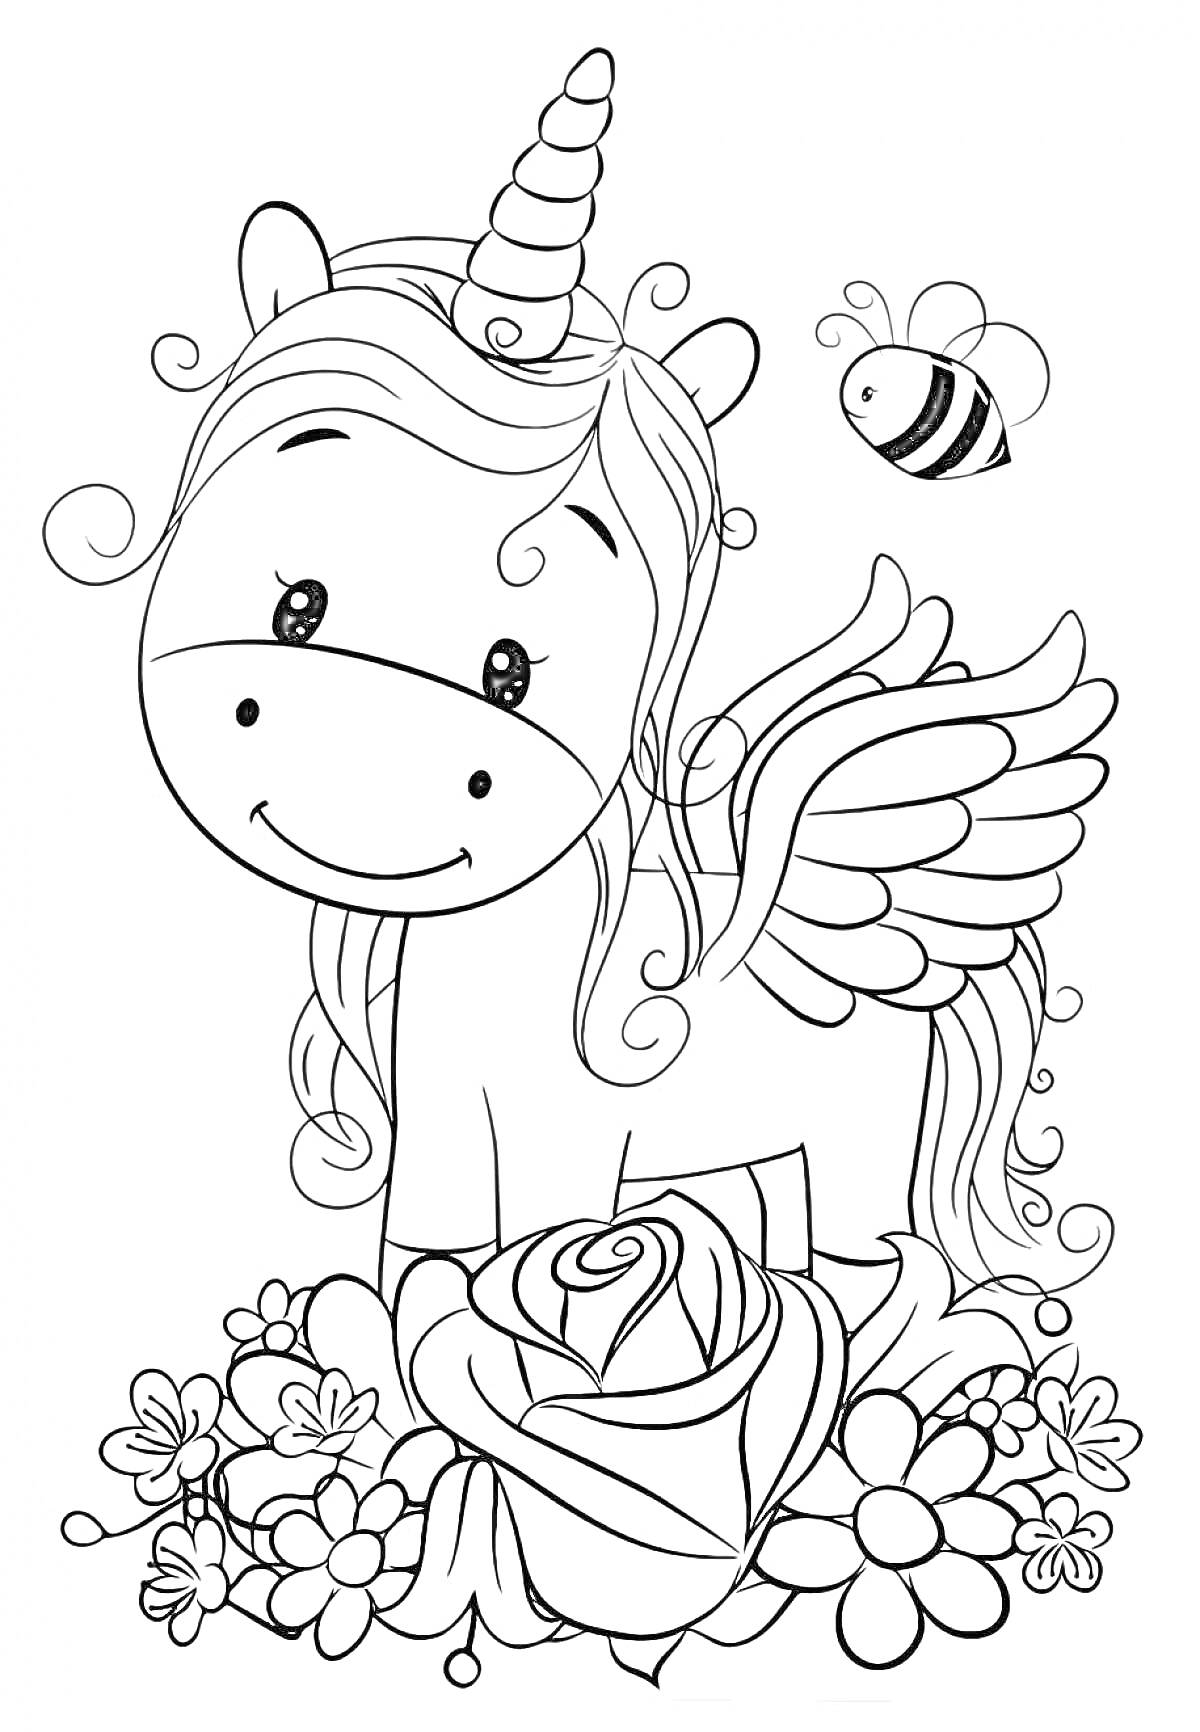 Раскраска Единорог с кудрявой гривой, крыльями, пчелой и цветами